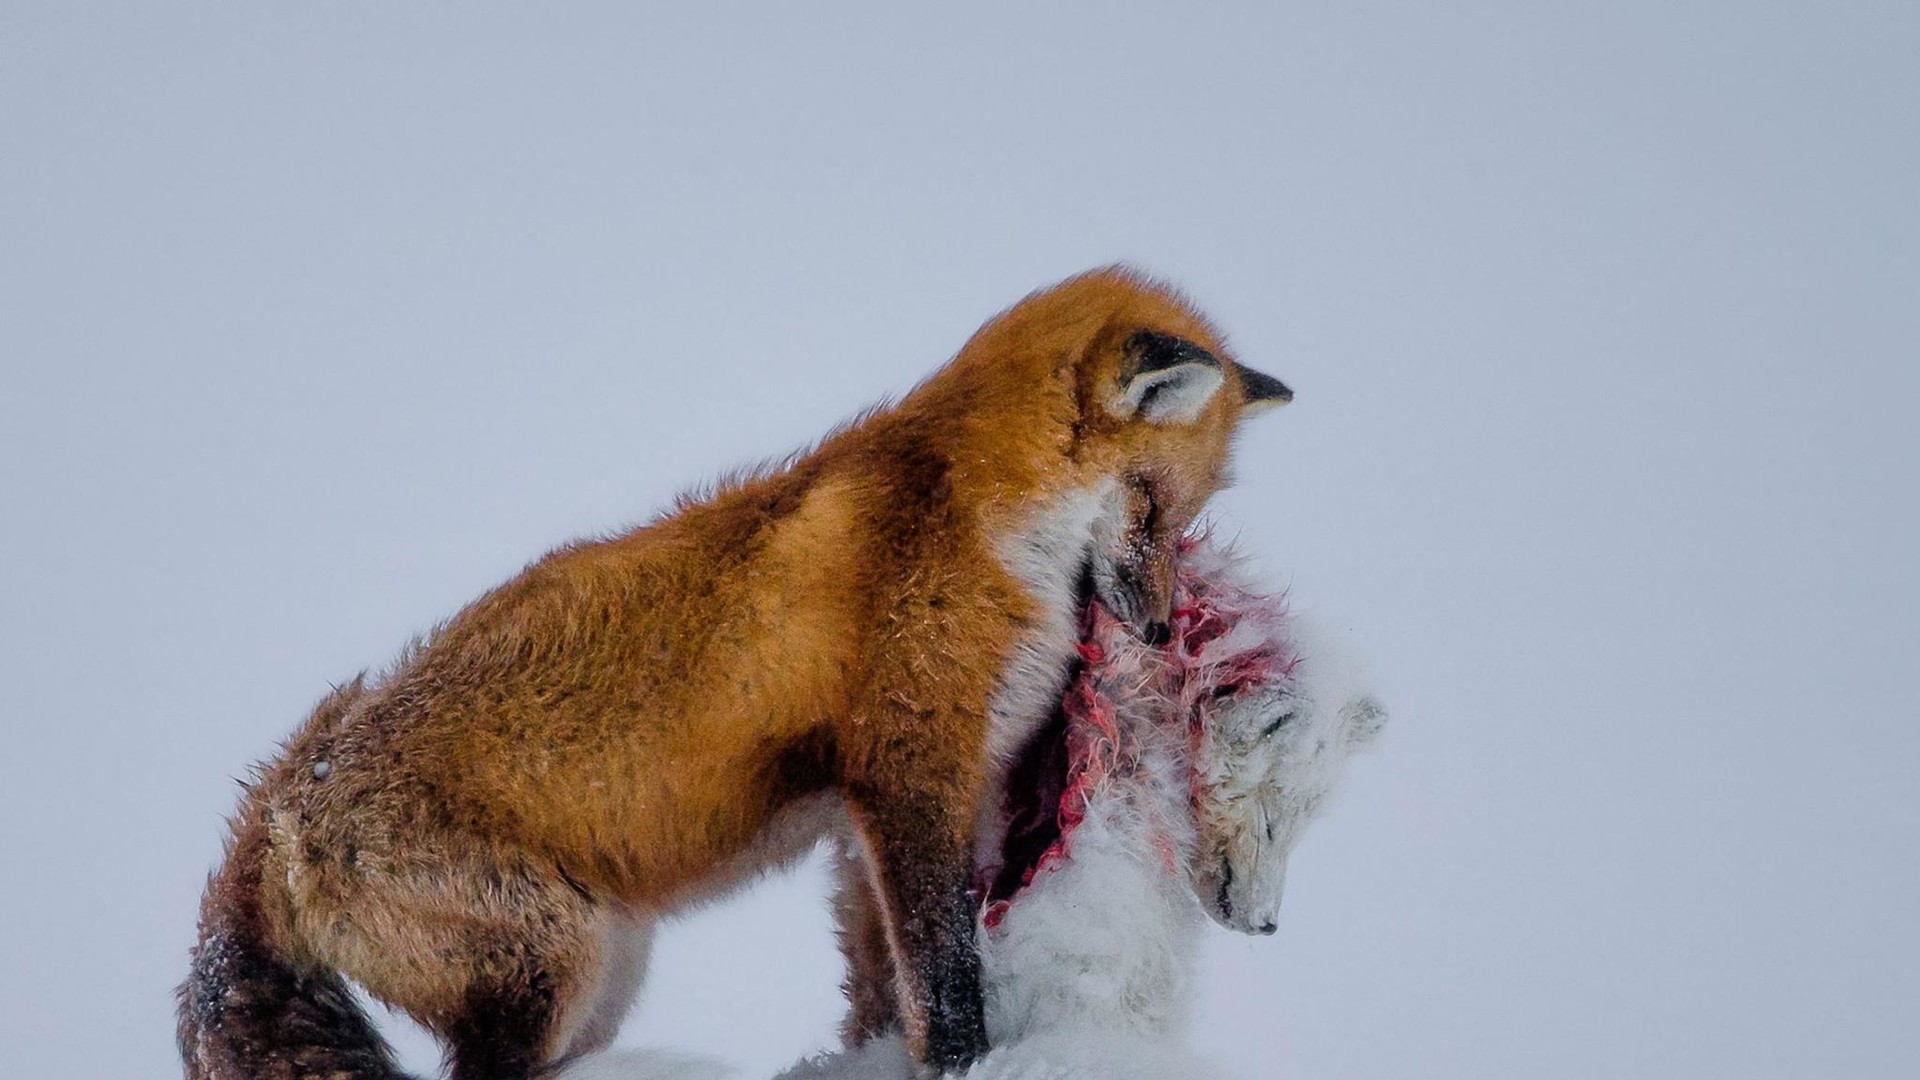 Лучшее фото конкурса. "История двух лисиц". Автор Don Gutoski, Канада